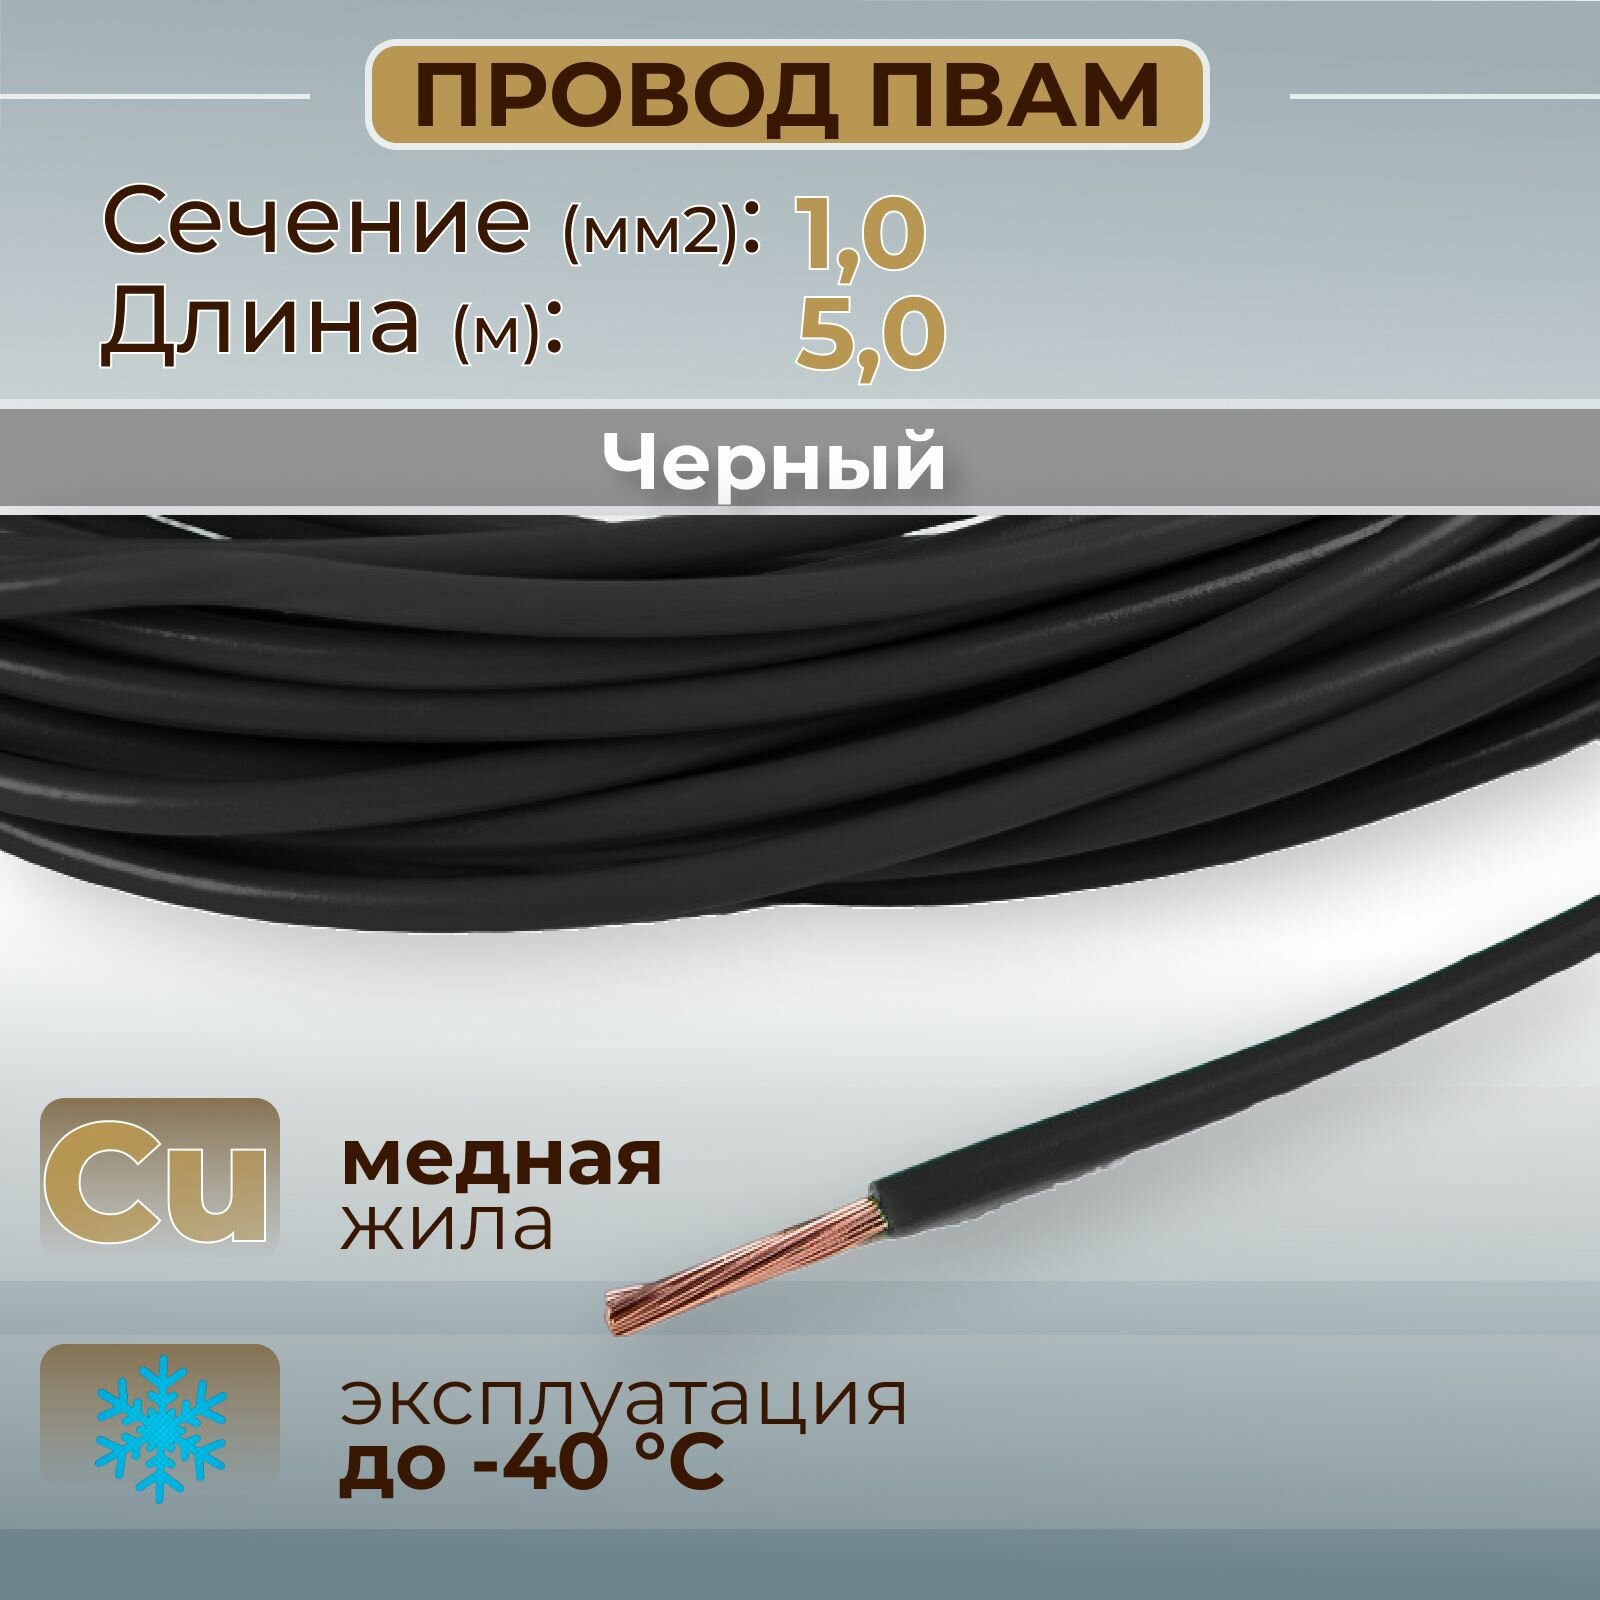 Провода автомобильные пвам цвет черный с сечением 10 кв. мм длина 5м